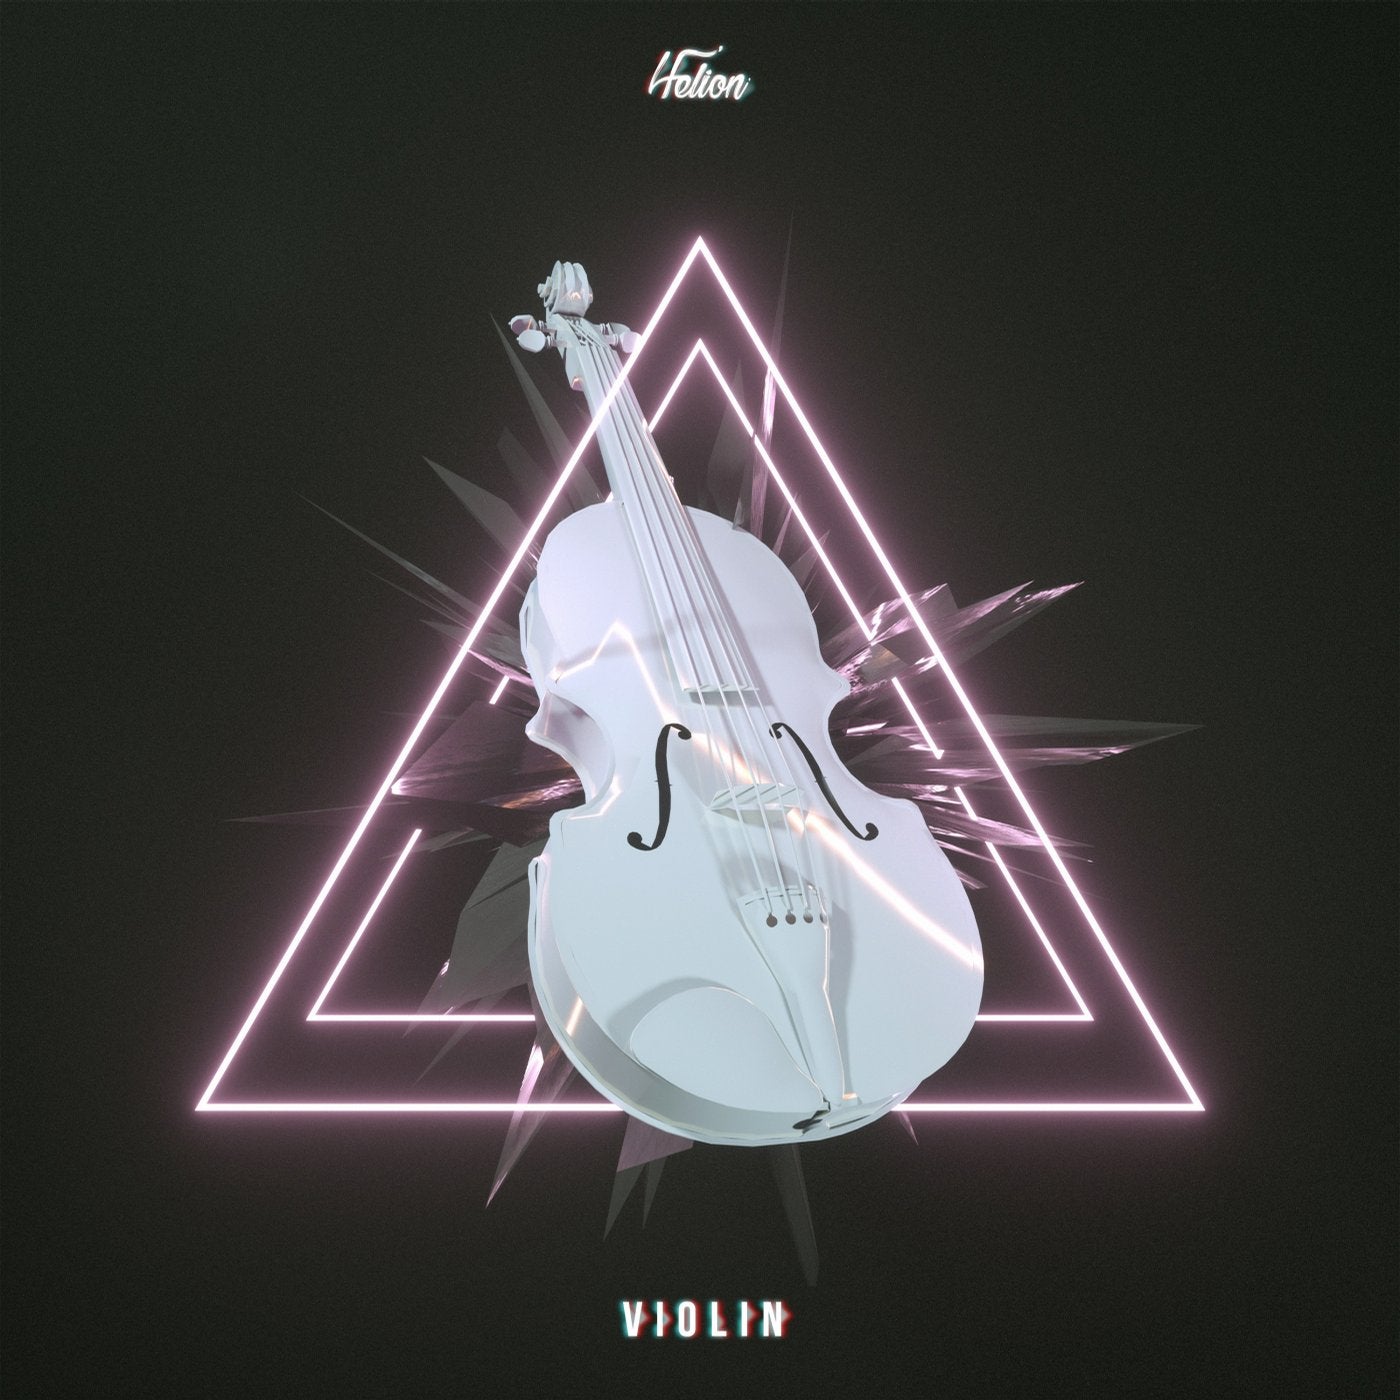 Violin mp3. Violin 2.0 Helion. Песня Violin.